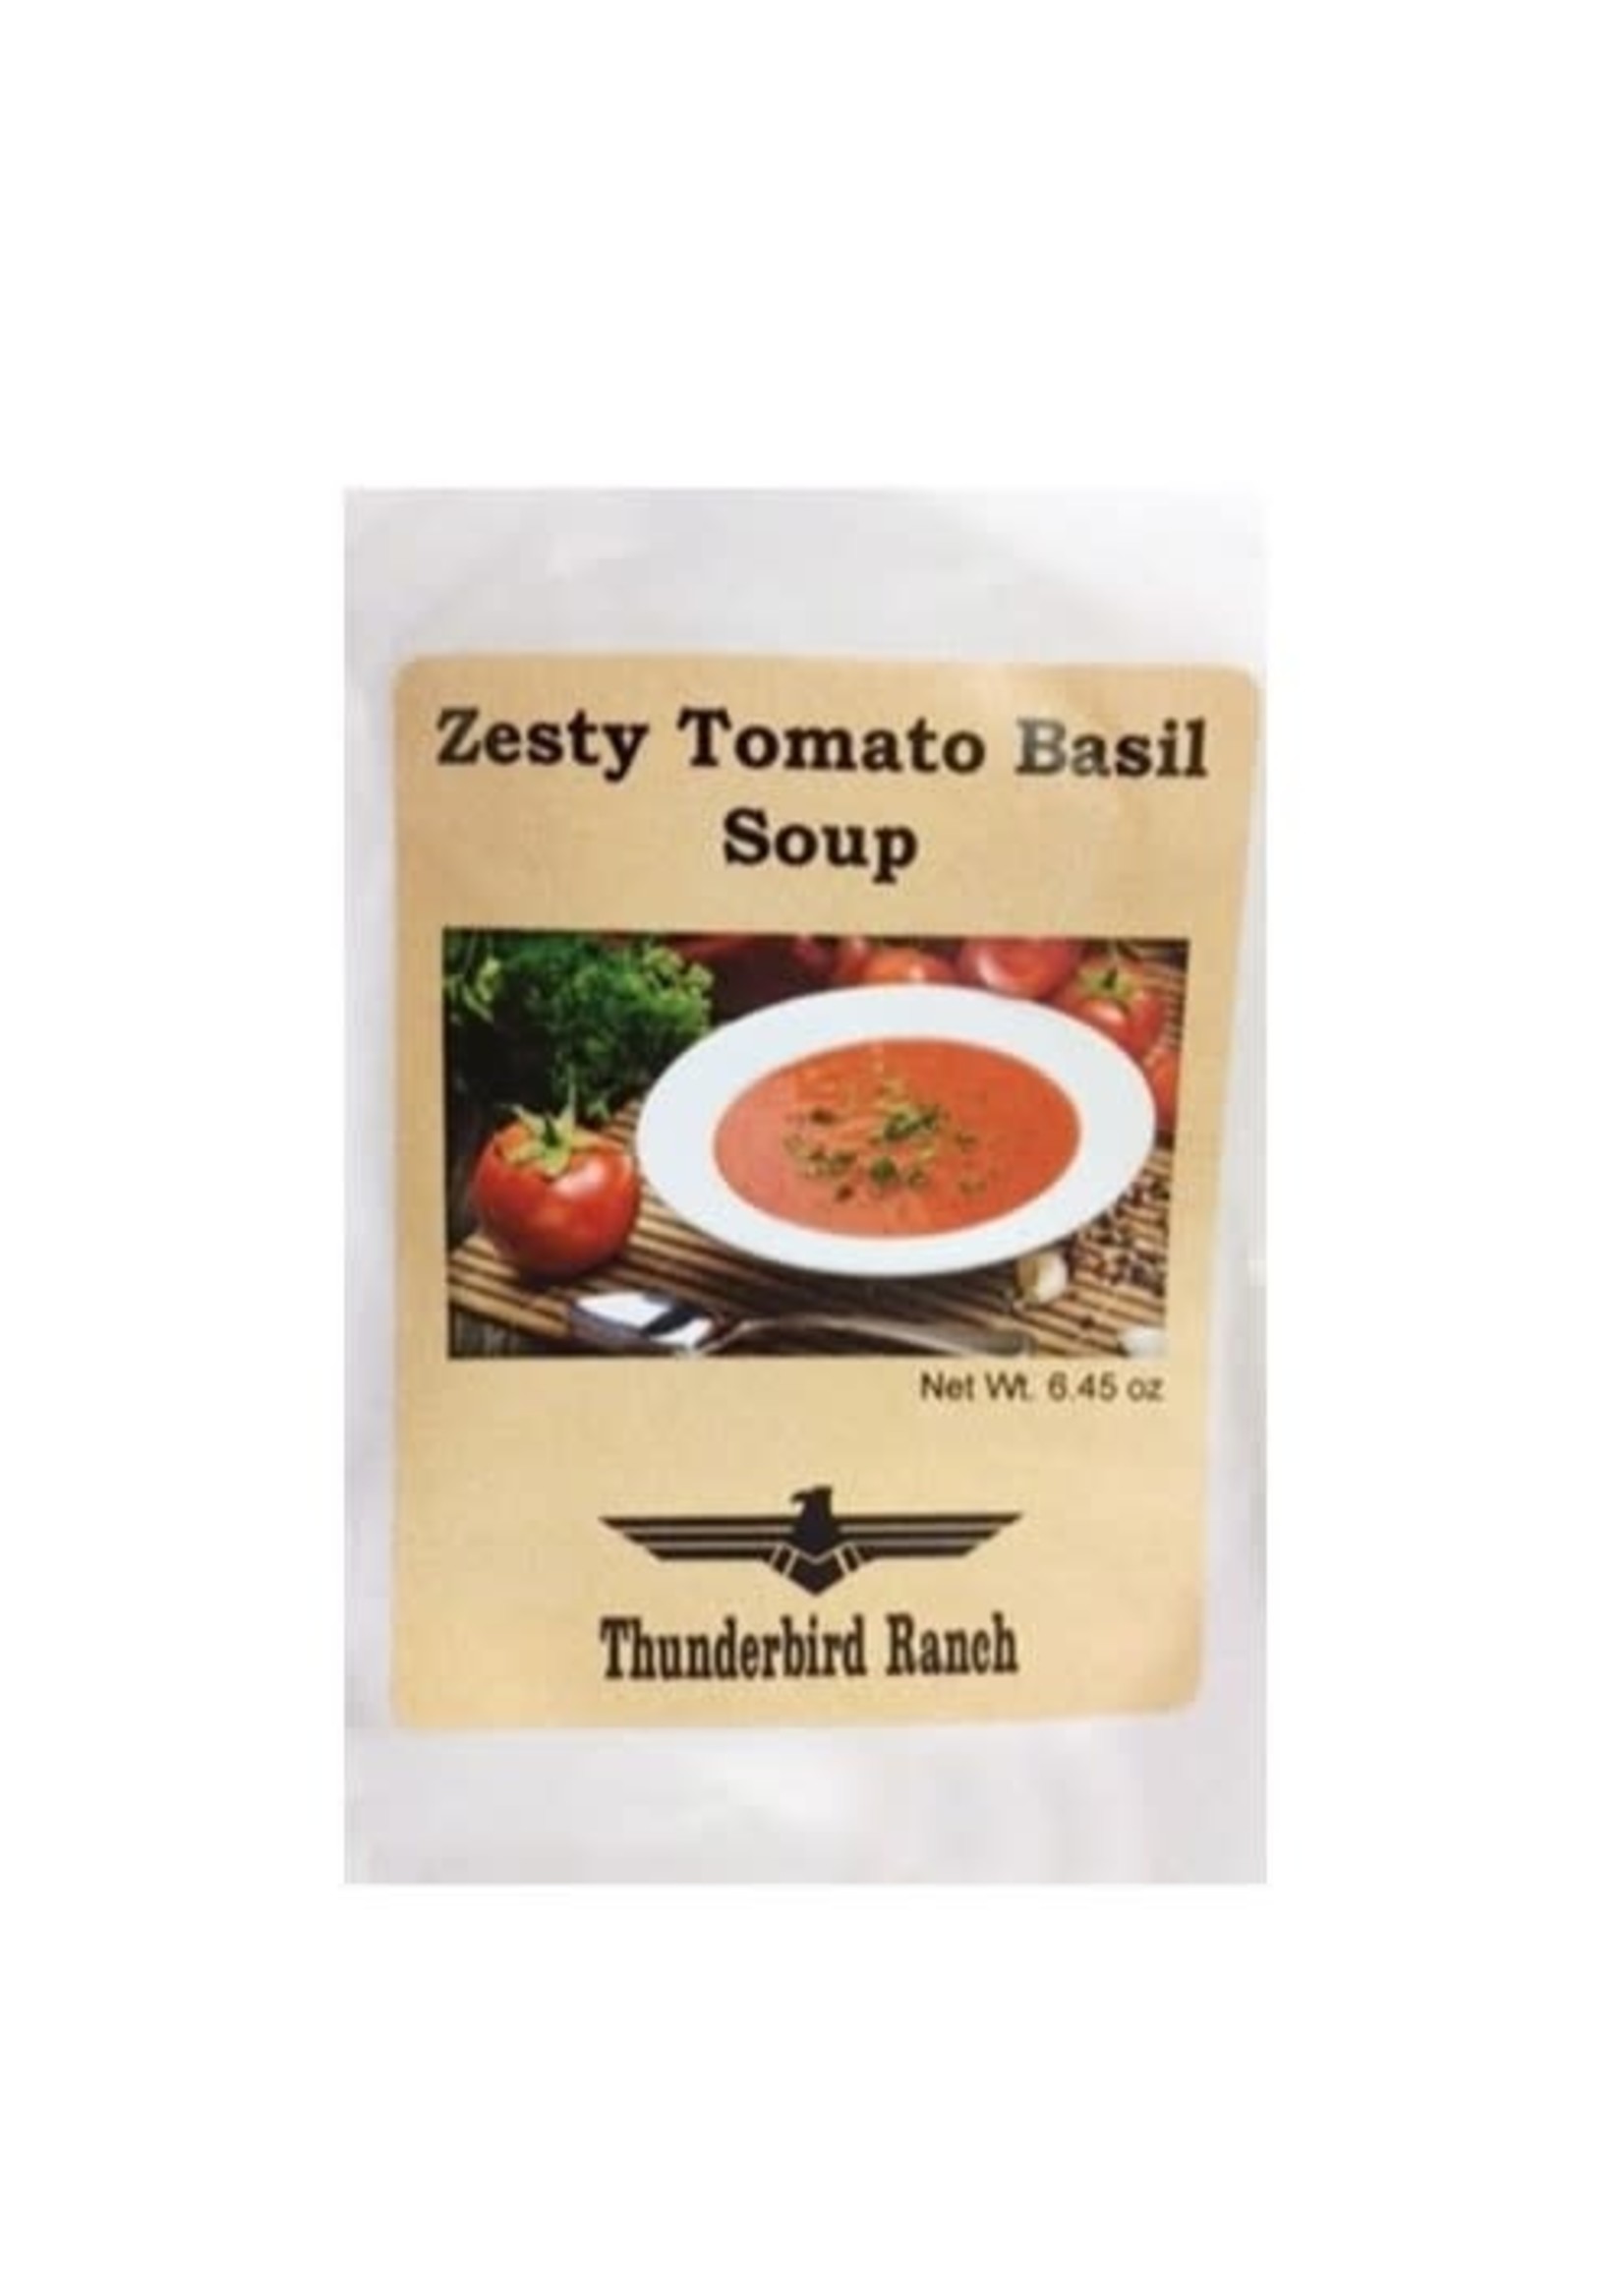 Zesty tomato Basil Soup Mix 6.45oz